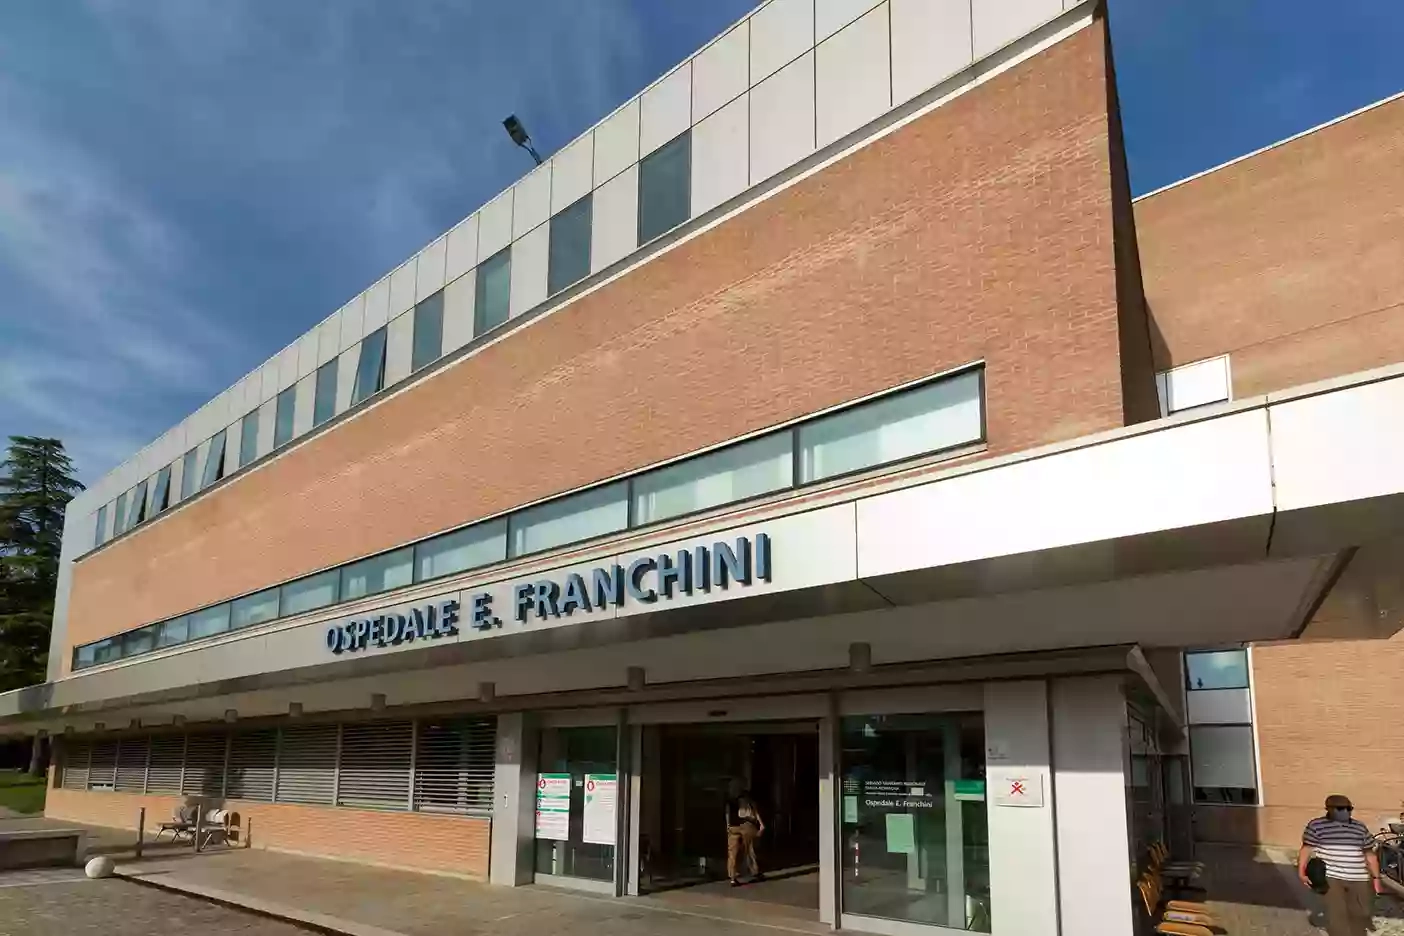 Ospedale E. Franchini di Montecchio